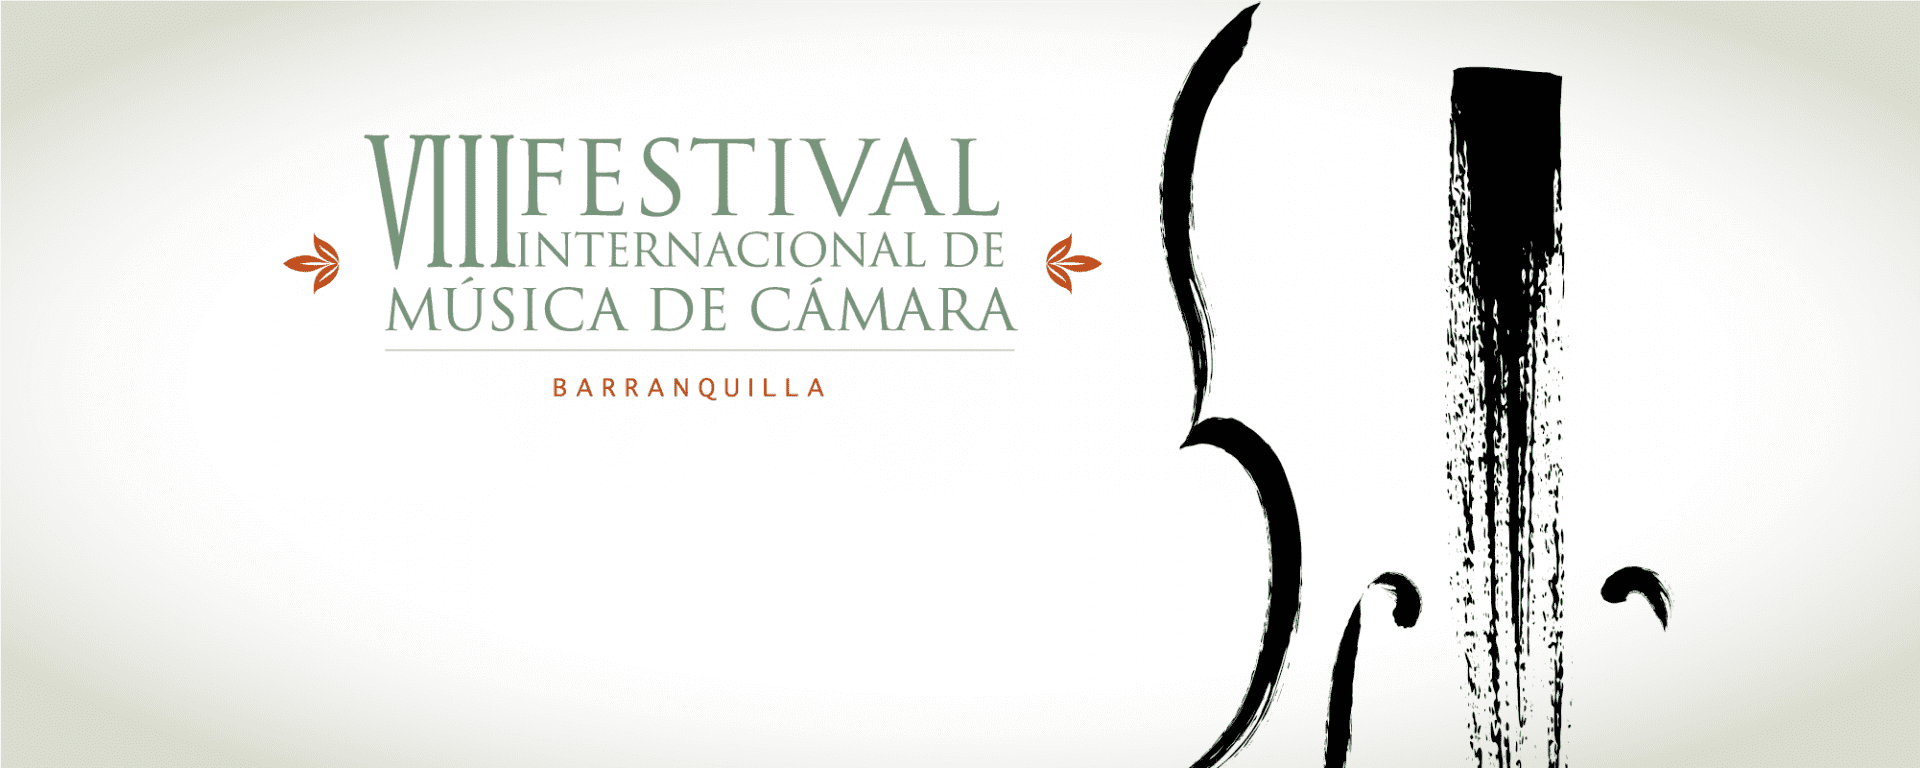 El Festival Internacional de Música de Cámara de Barranquilla nació en octubre de 2011 con el objetivo de brindar a la ciudad y a la región una agenda artística y educativa de alto nivel en torno a la música de cámara.